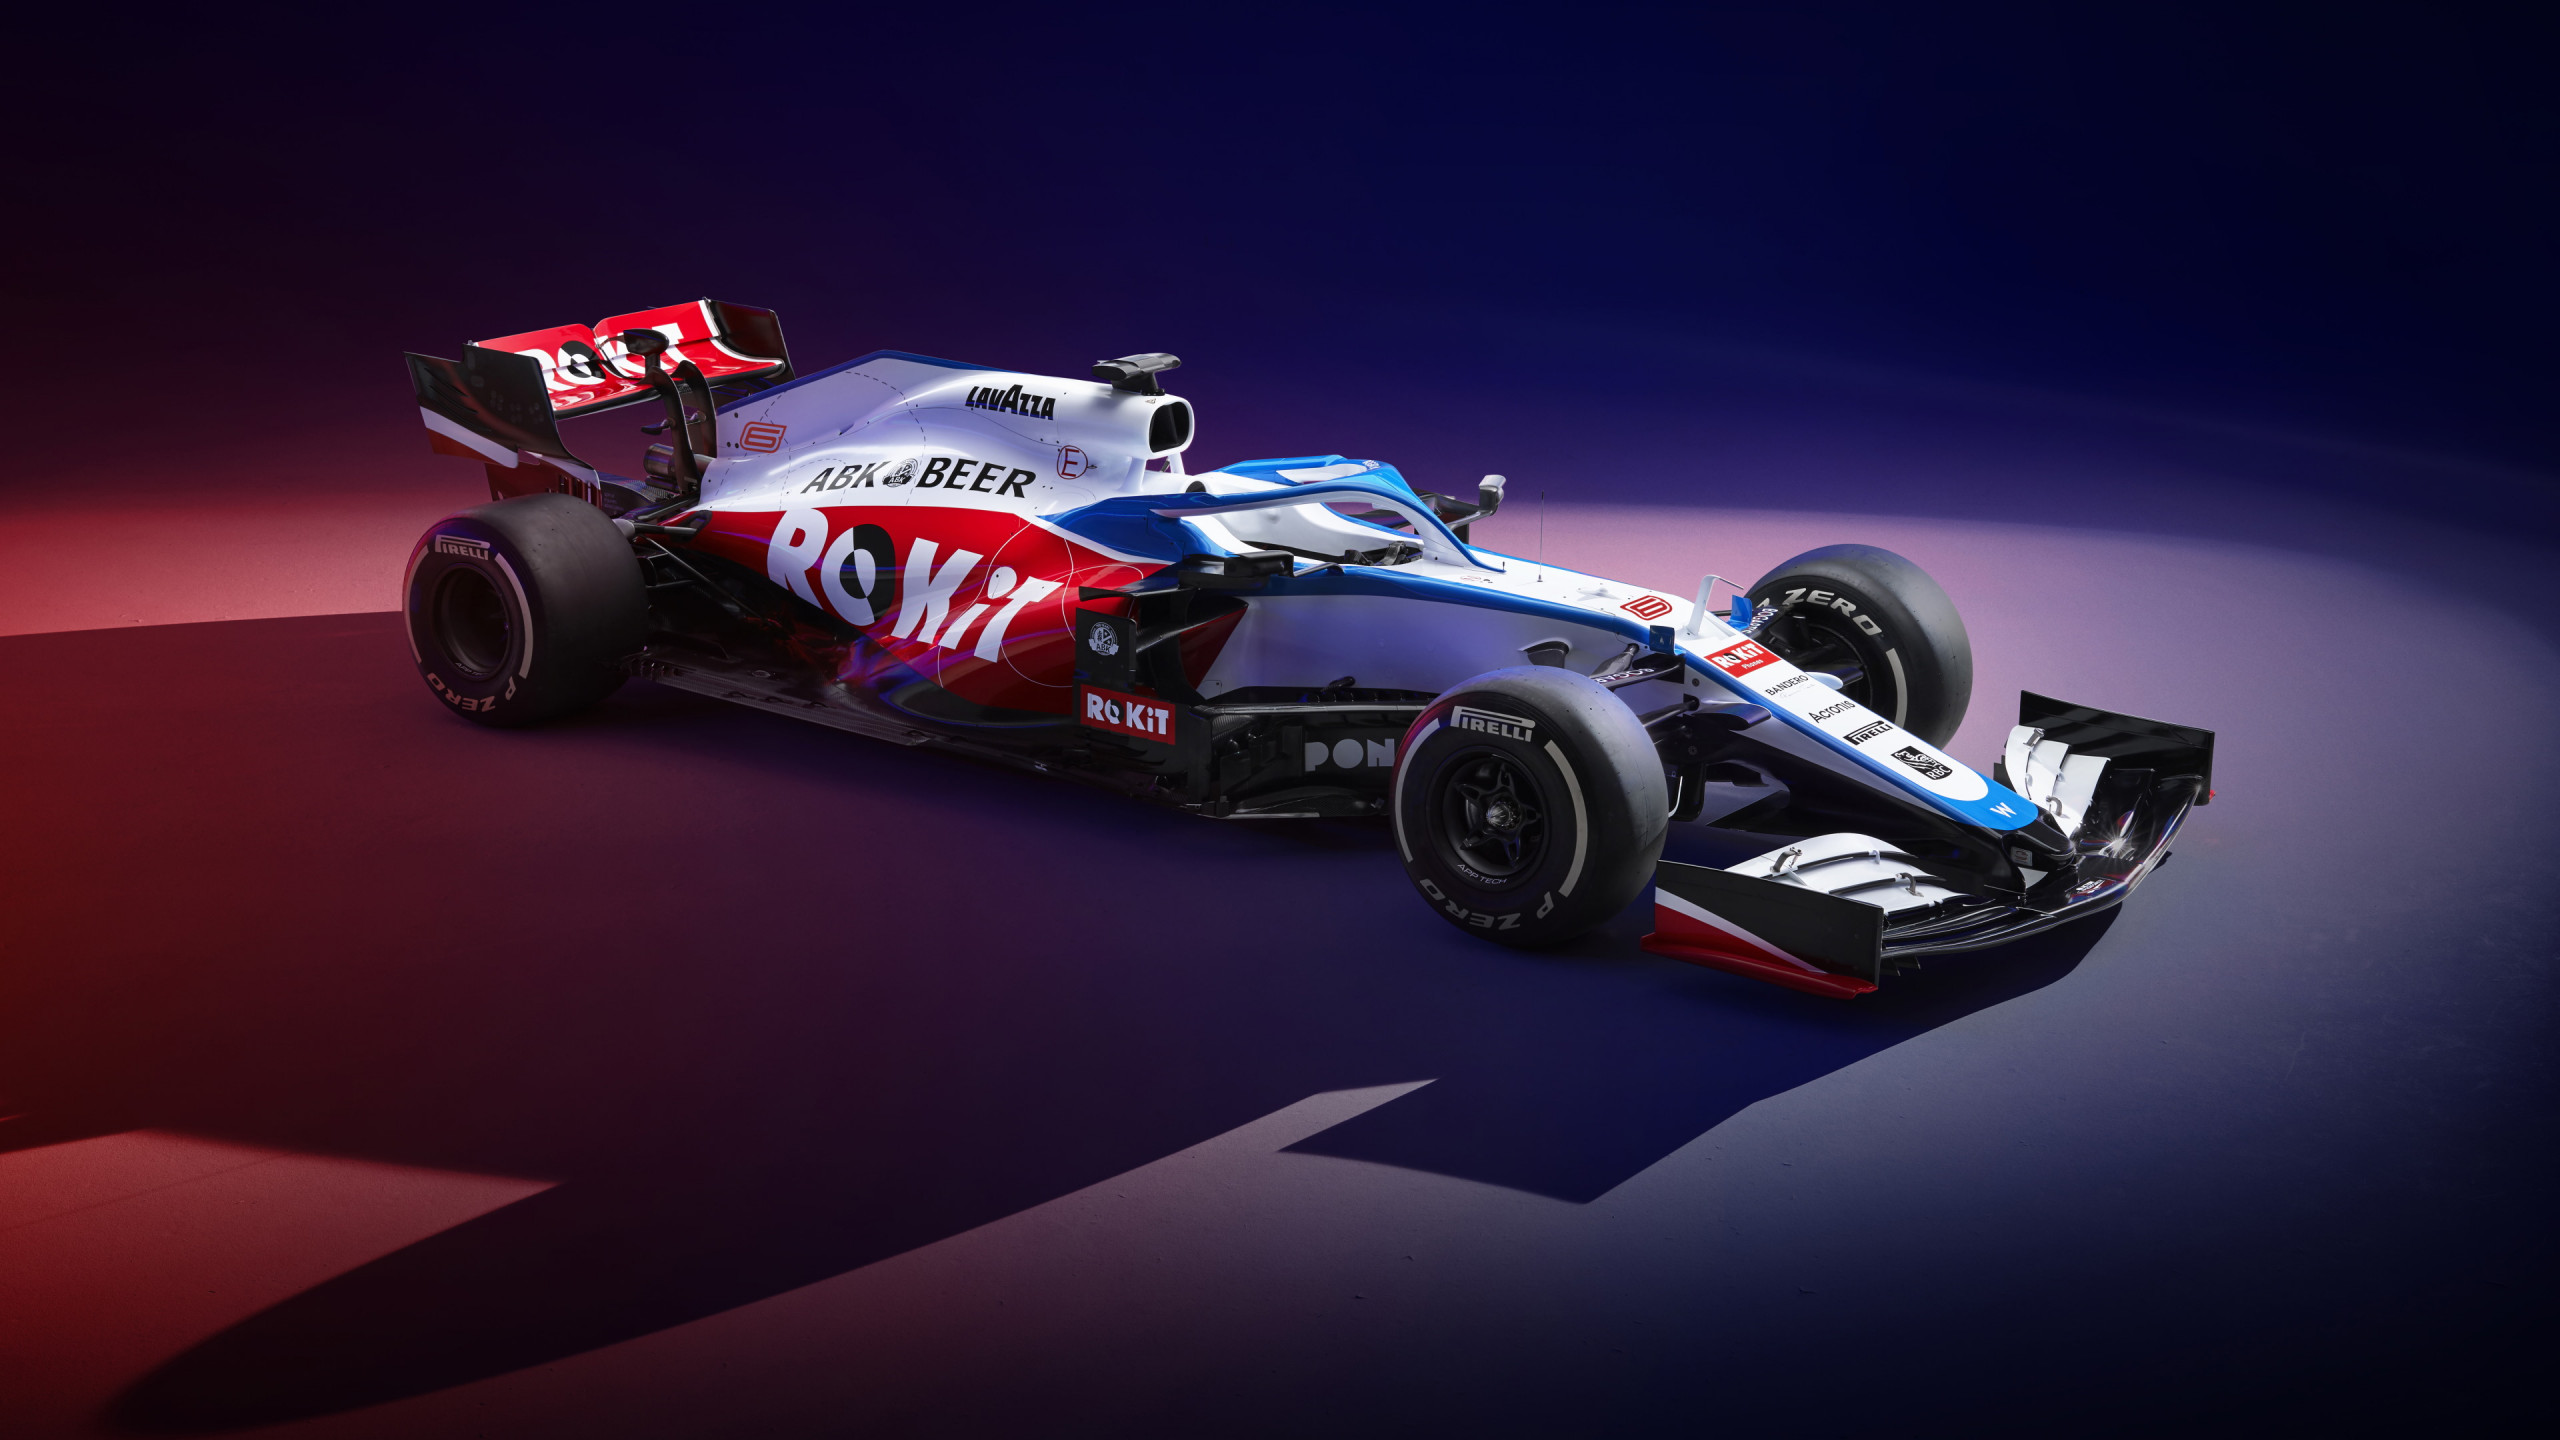 Williams F1 FW43 2020 wallpaper 2560x1440